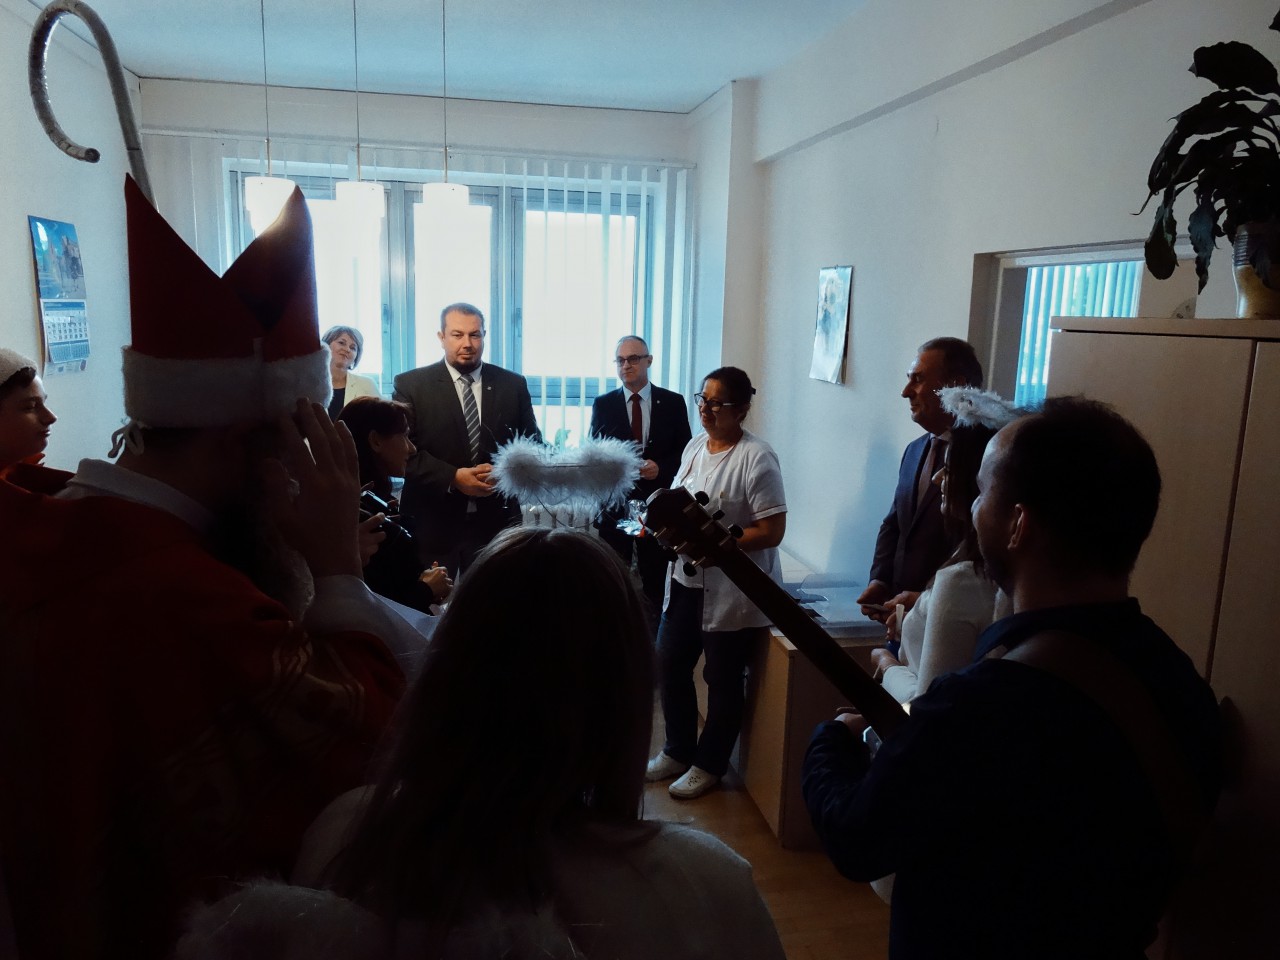 Mikołajki 2018 w szpitalu (fot. A. Wojtowicz FOTON)